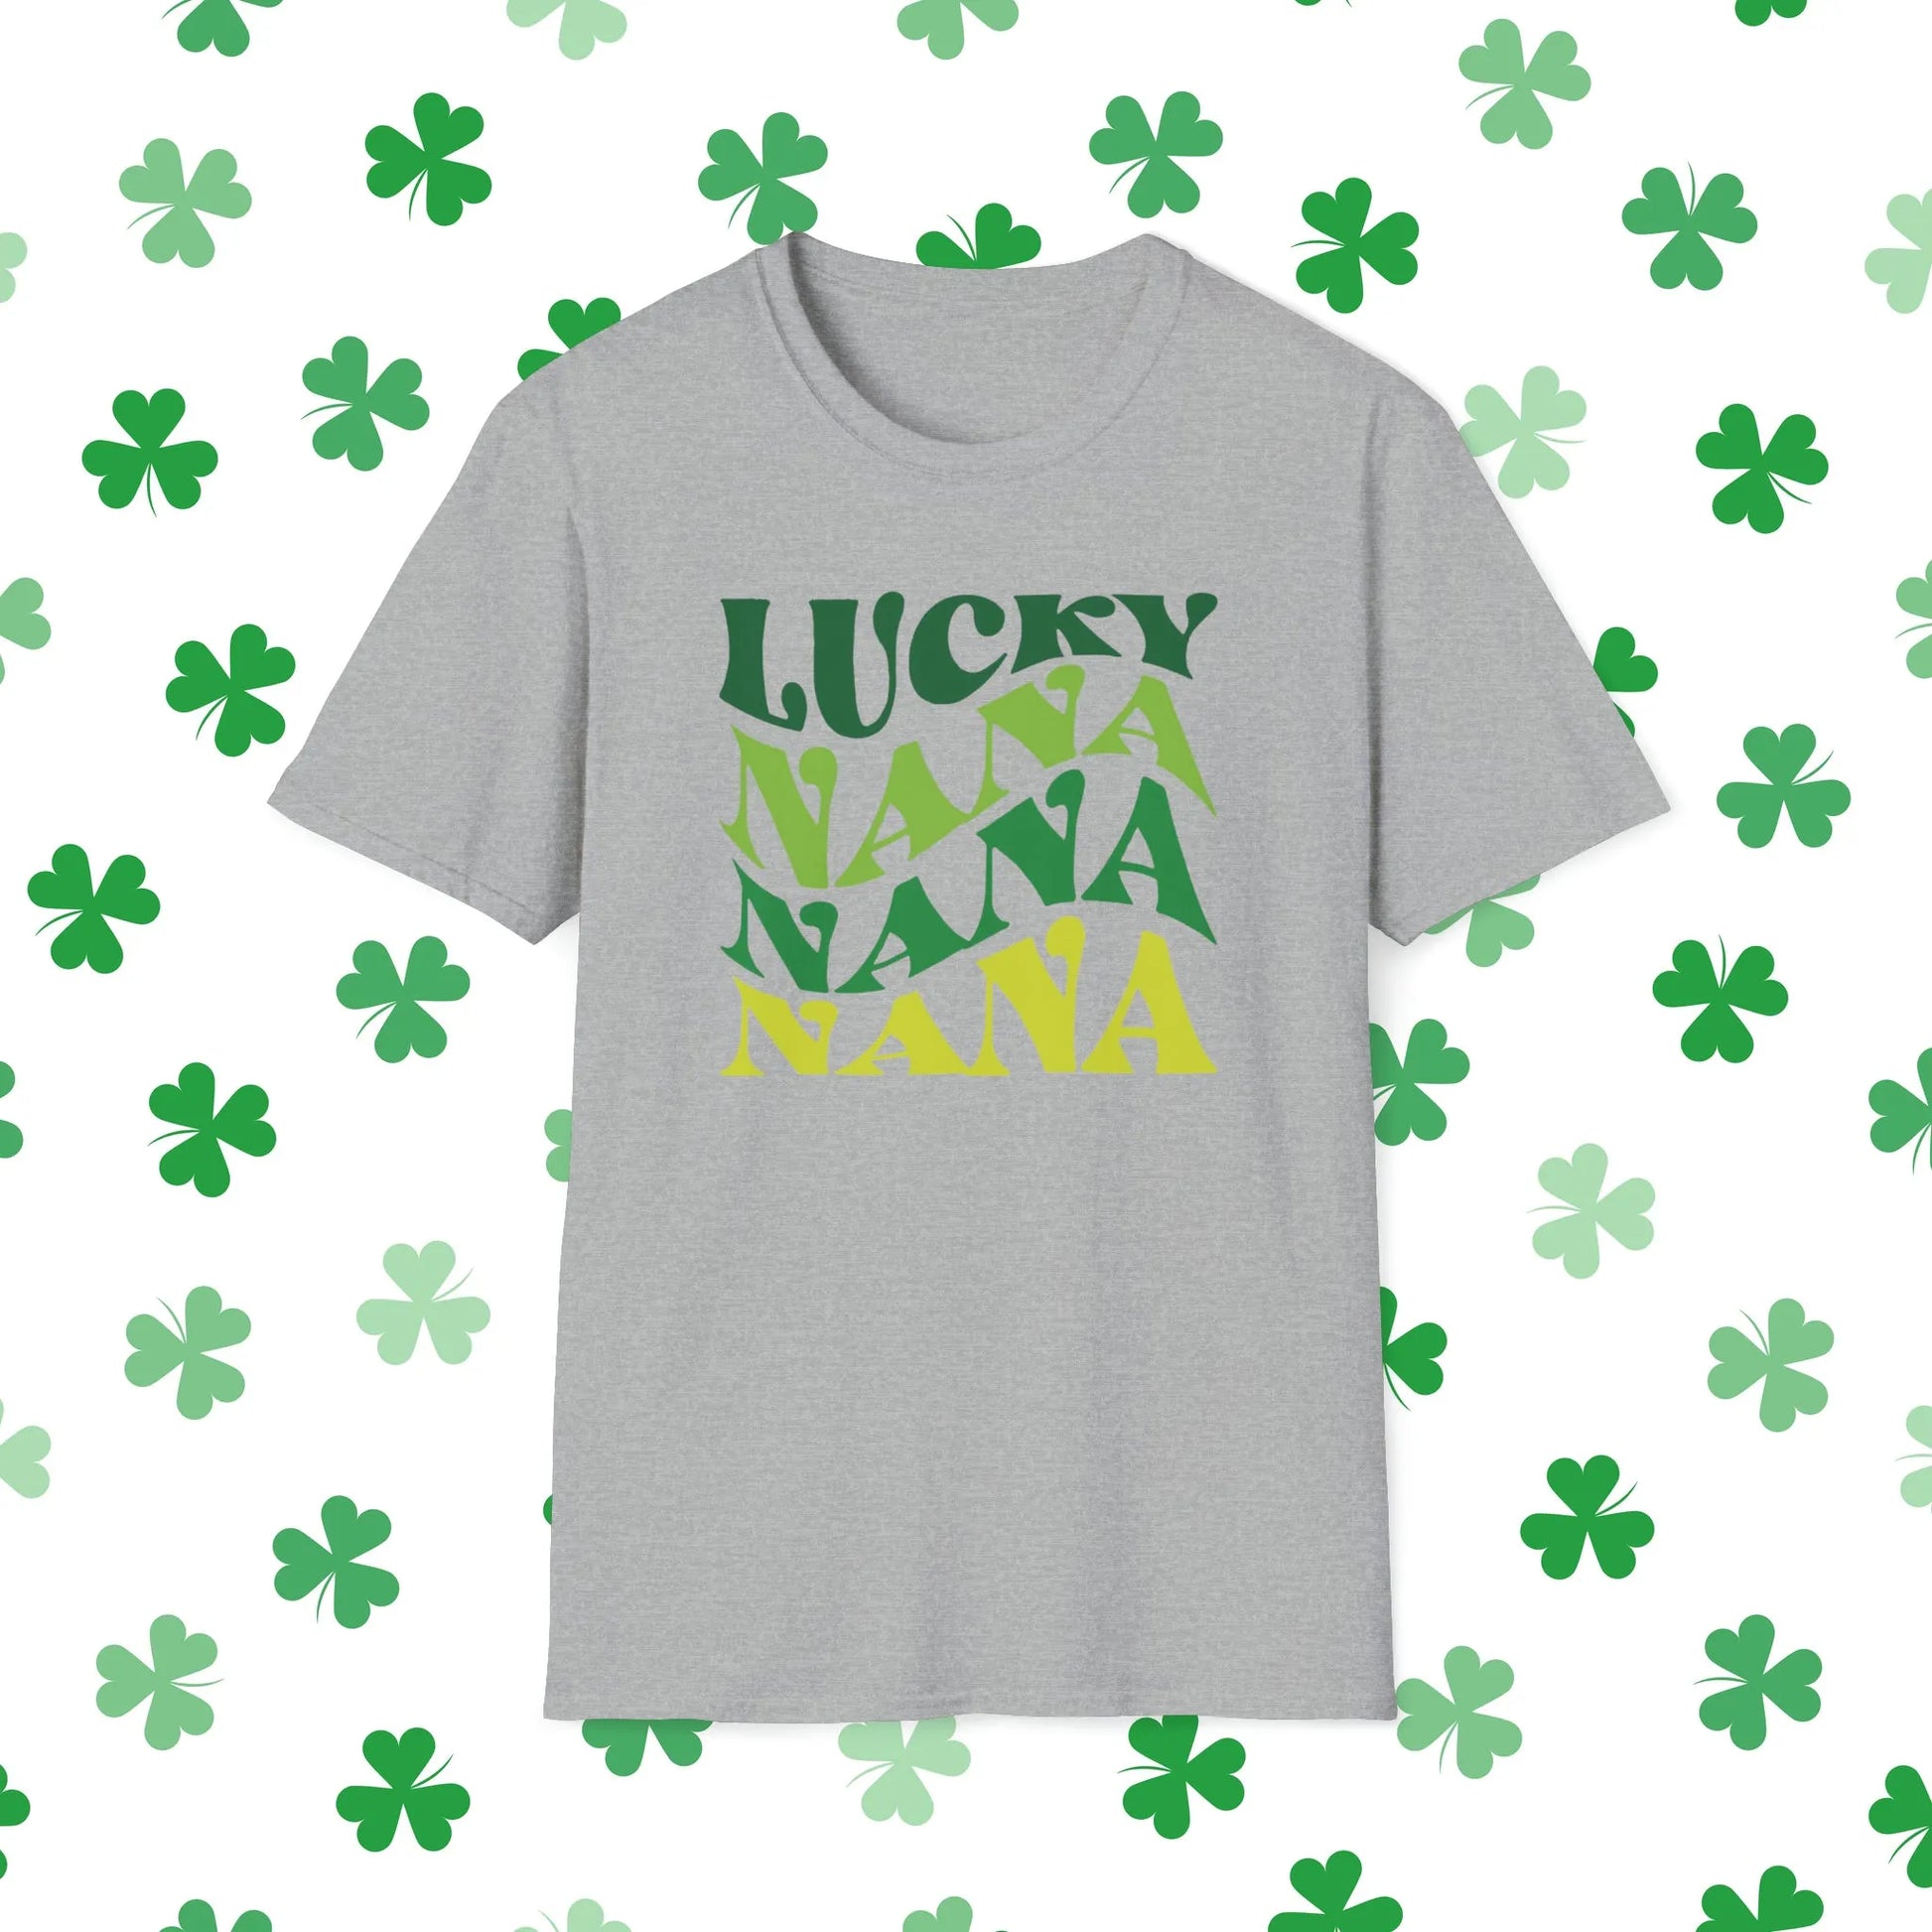 Lucky Nana Nana Nana Retro-Style St. Patrick's Day T-Shirt - Comfort & Charm - St. Patrick's Day Nana Shirt Grey